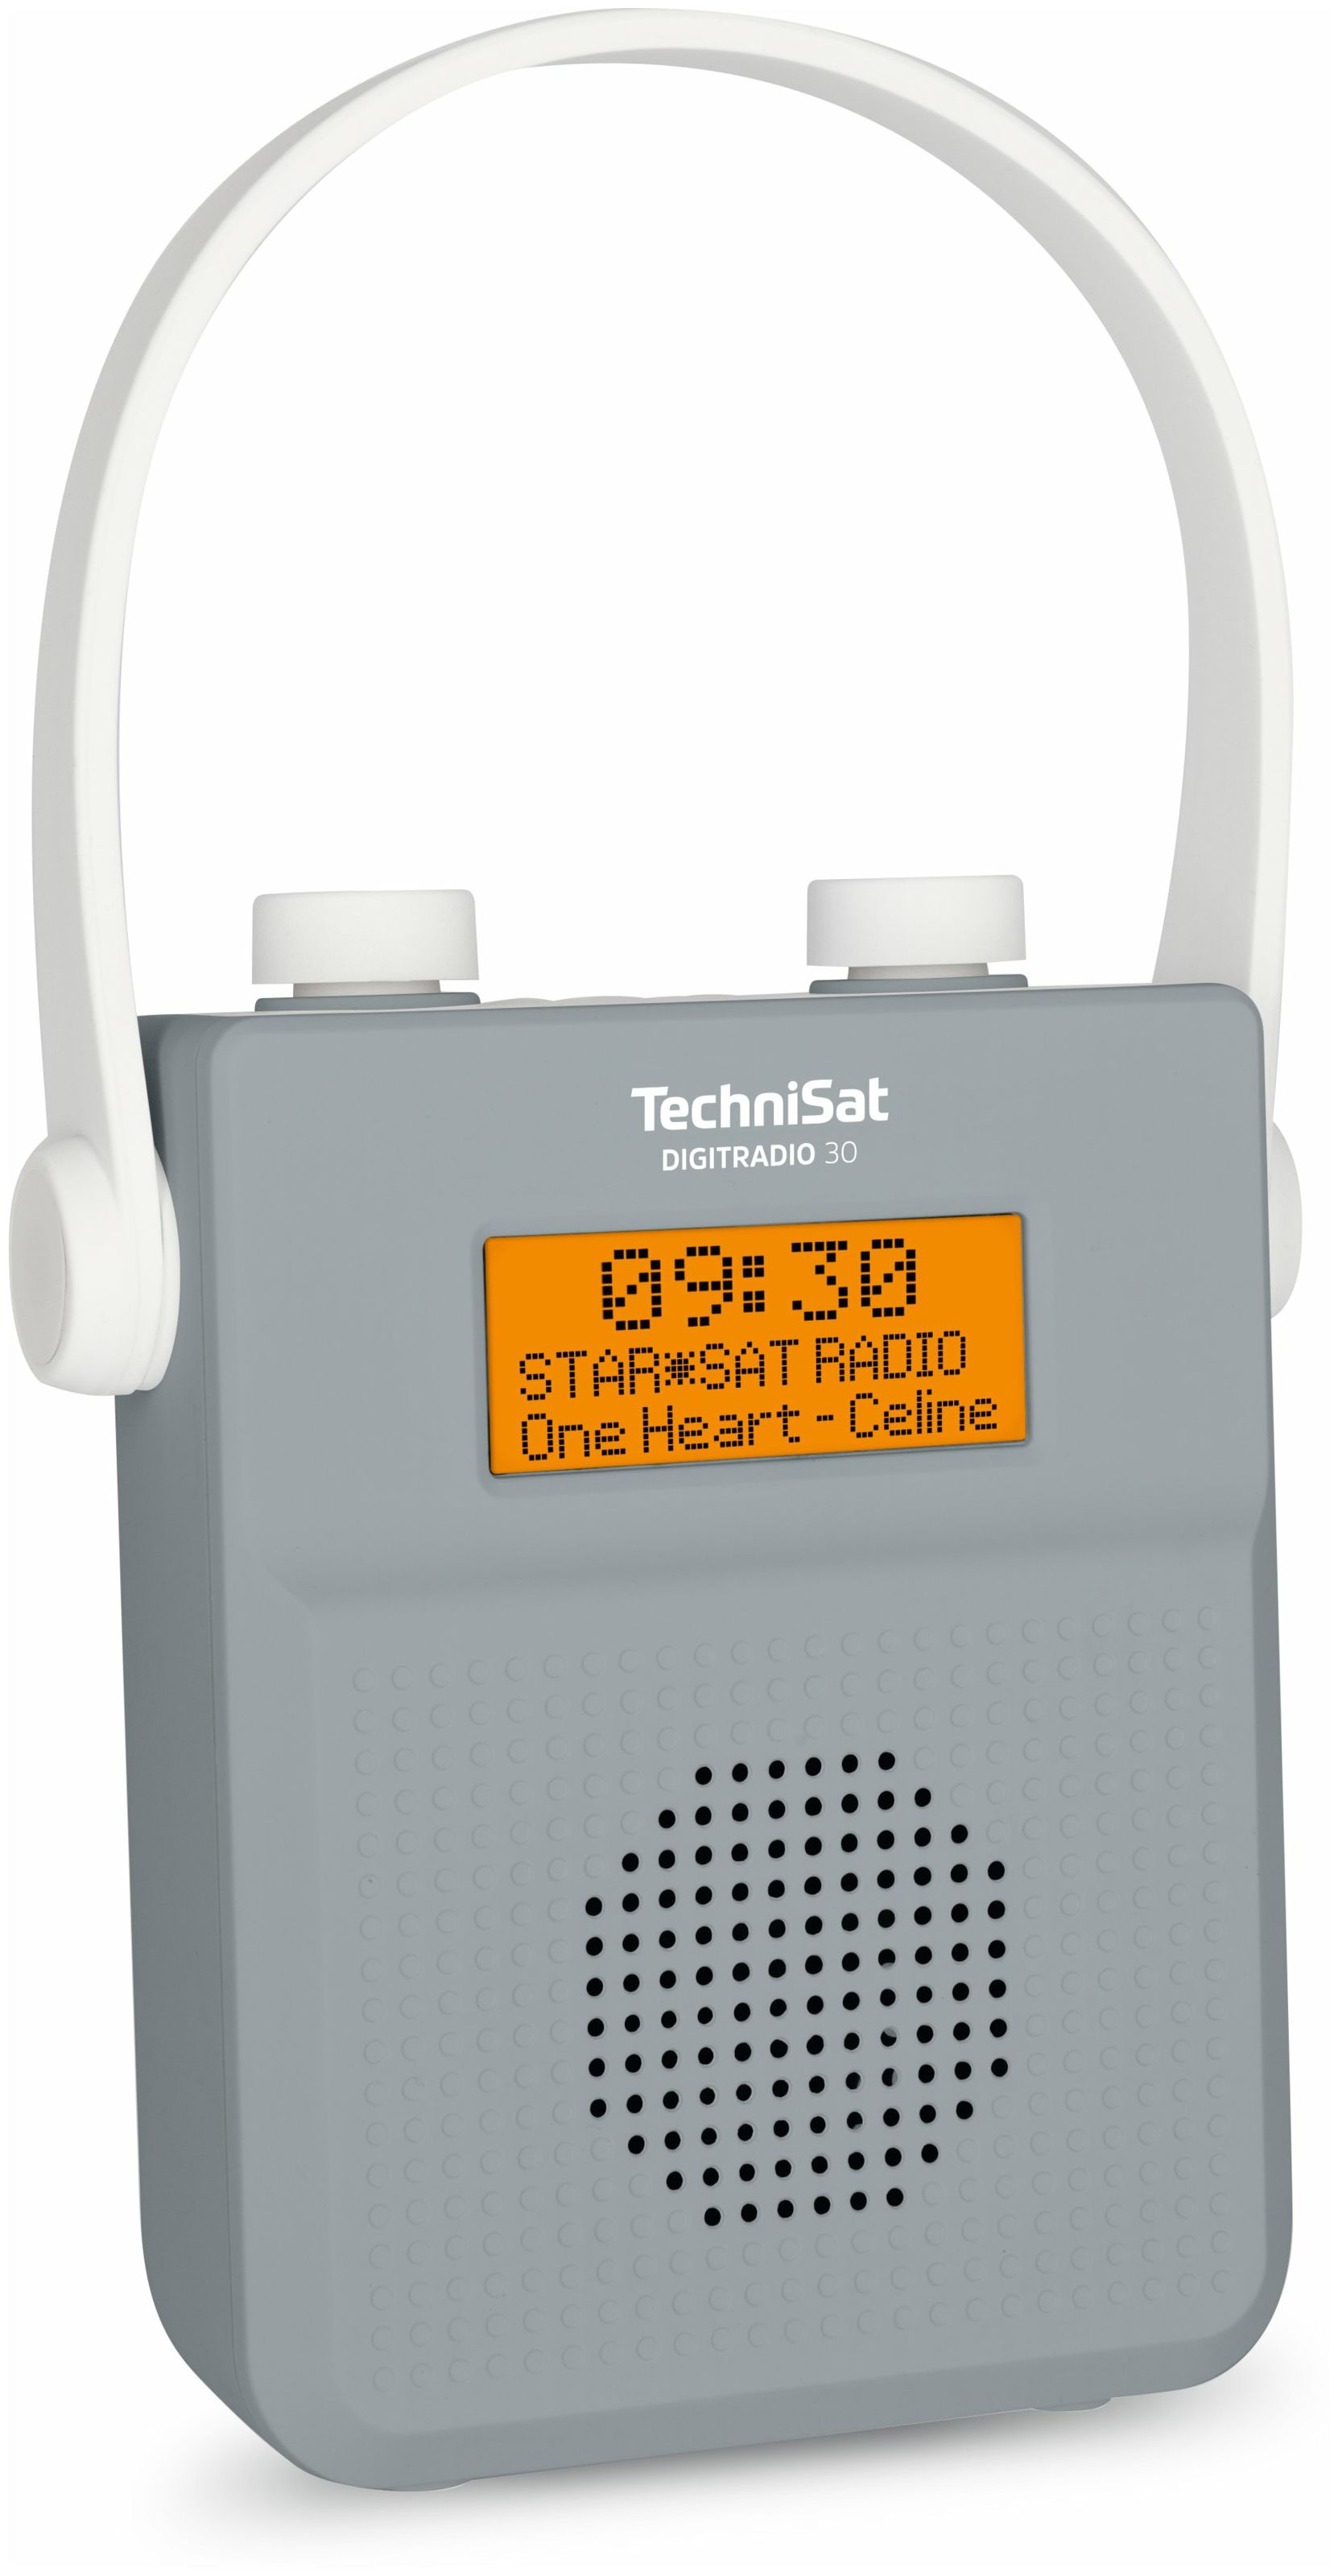 TechniSat Bluetooth 30 IPX5 von expert Digitradio FM (Grau) Tragbar Technomarkt DAB+, Radio